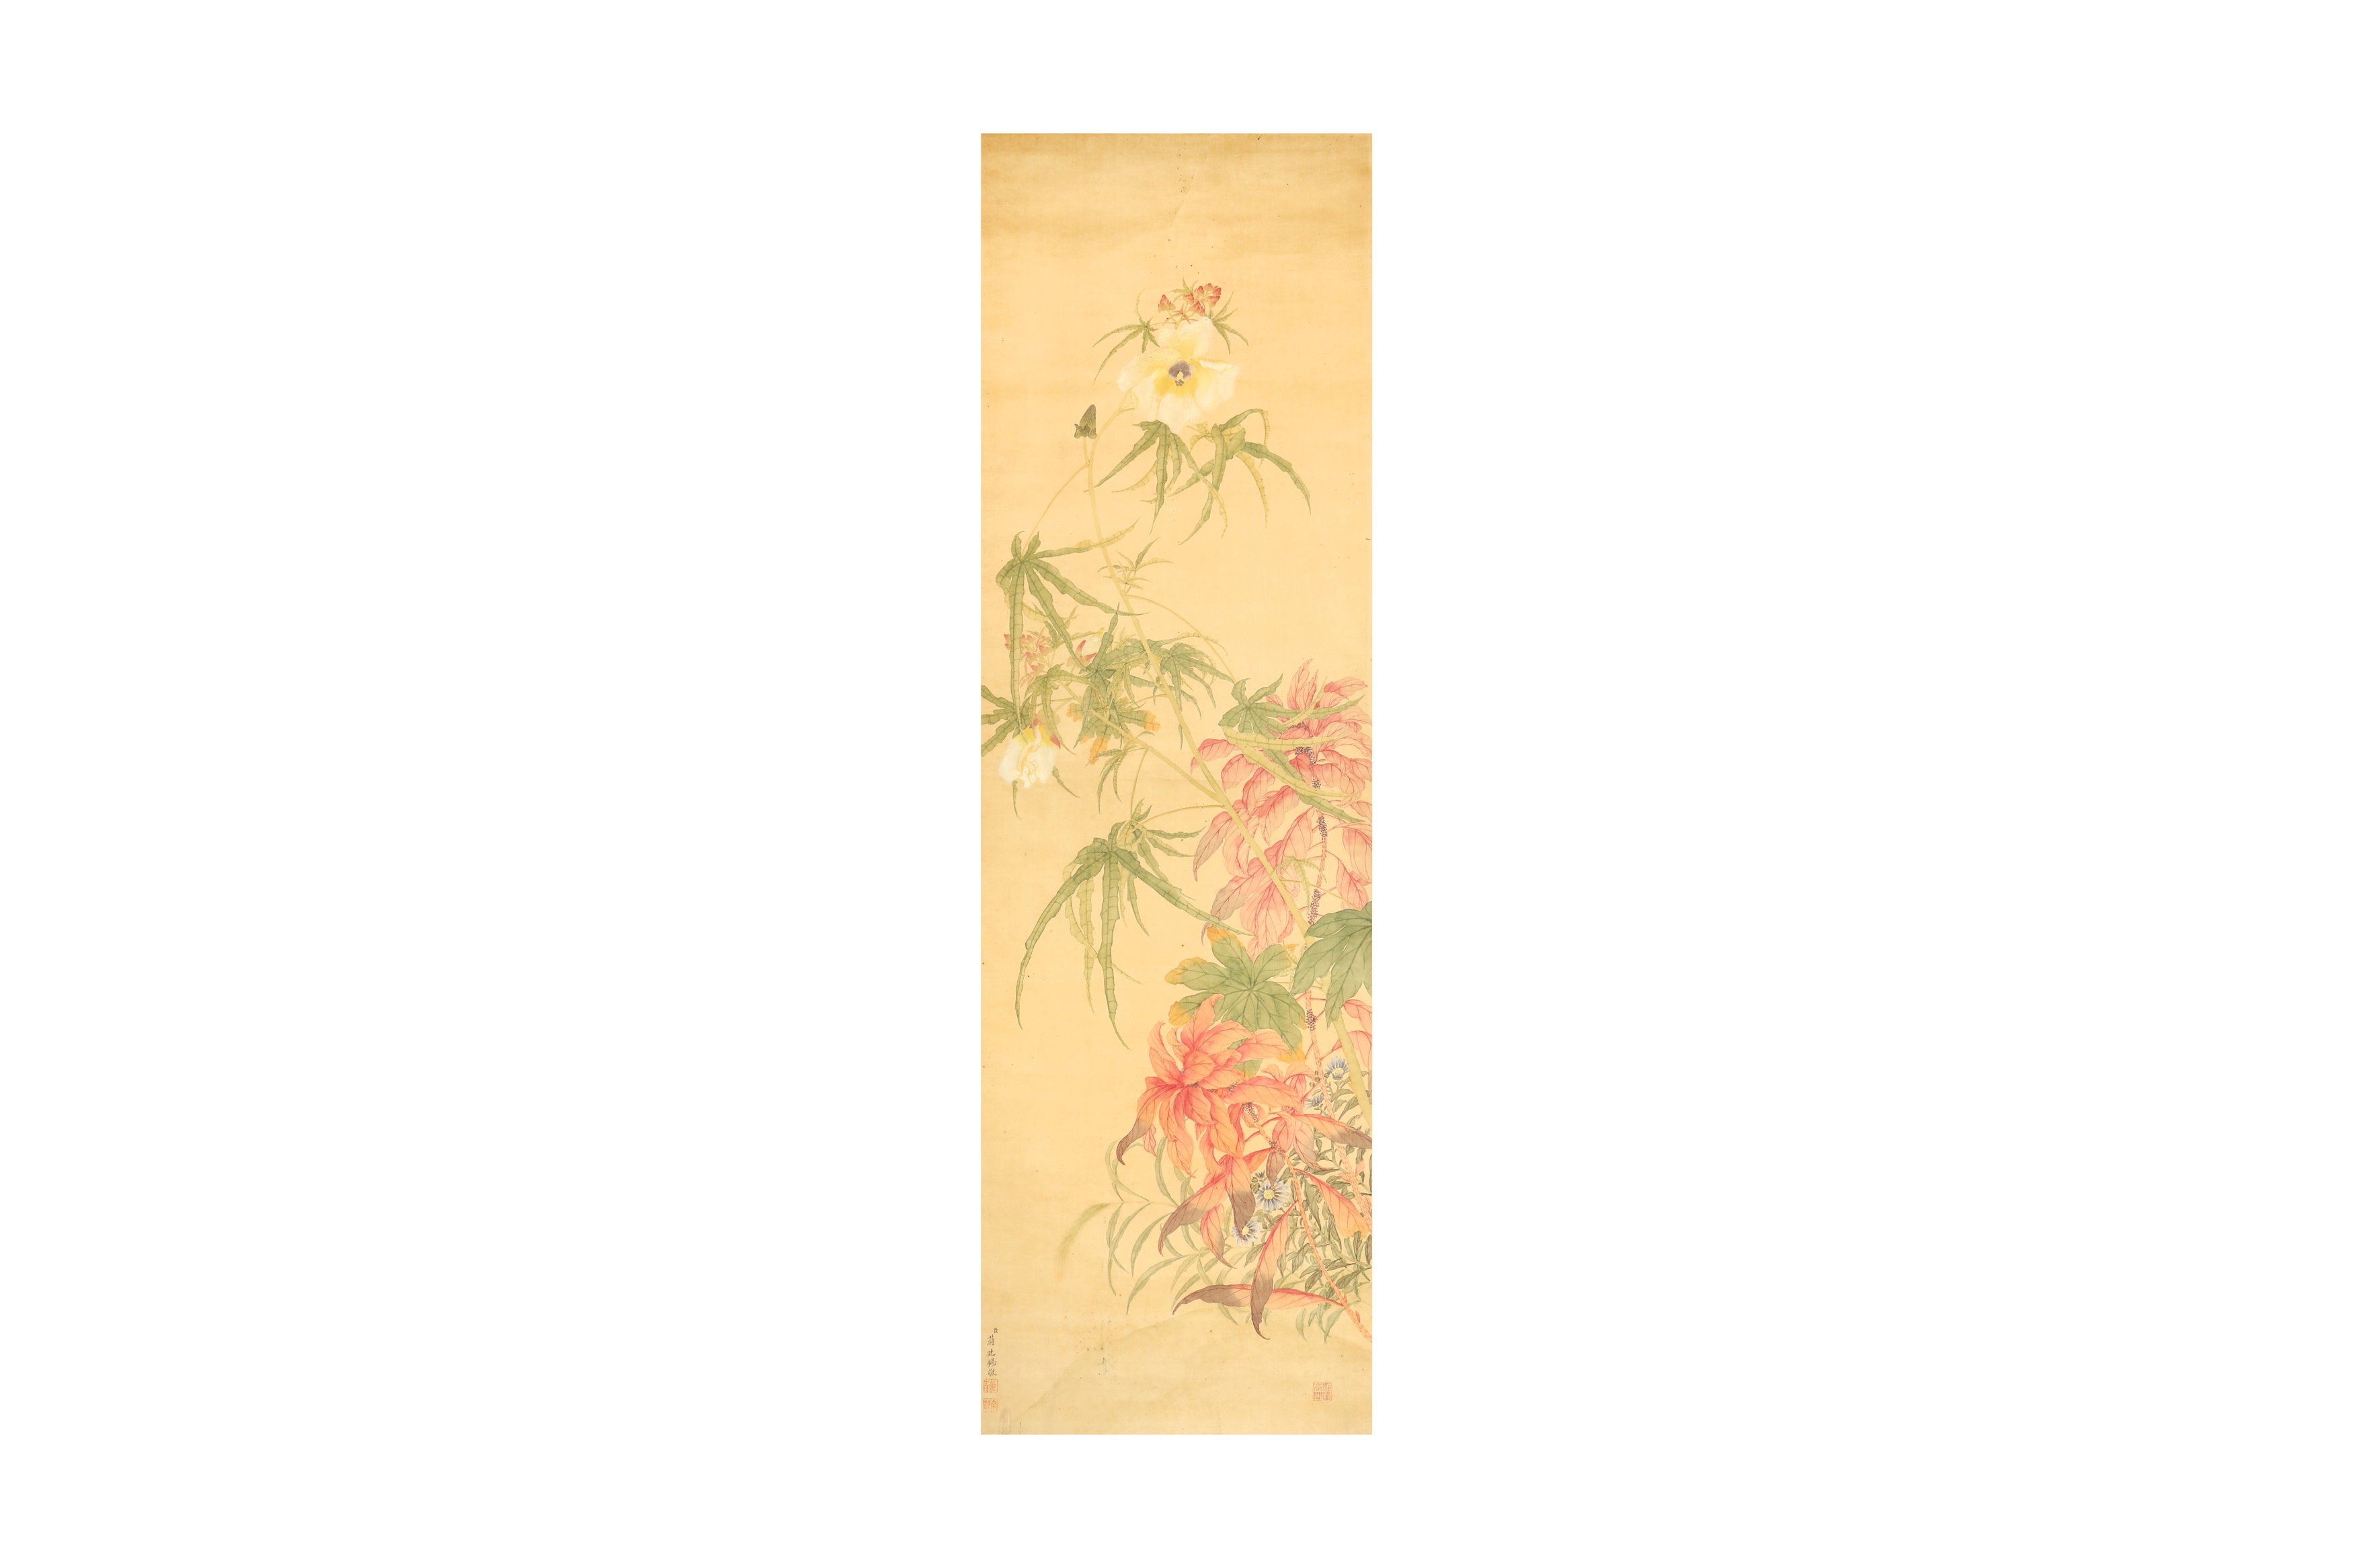 JIANG TINGXI 蔣廷錫 (Changshu, China, 1669 - 1732) Flowers 花卉圖